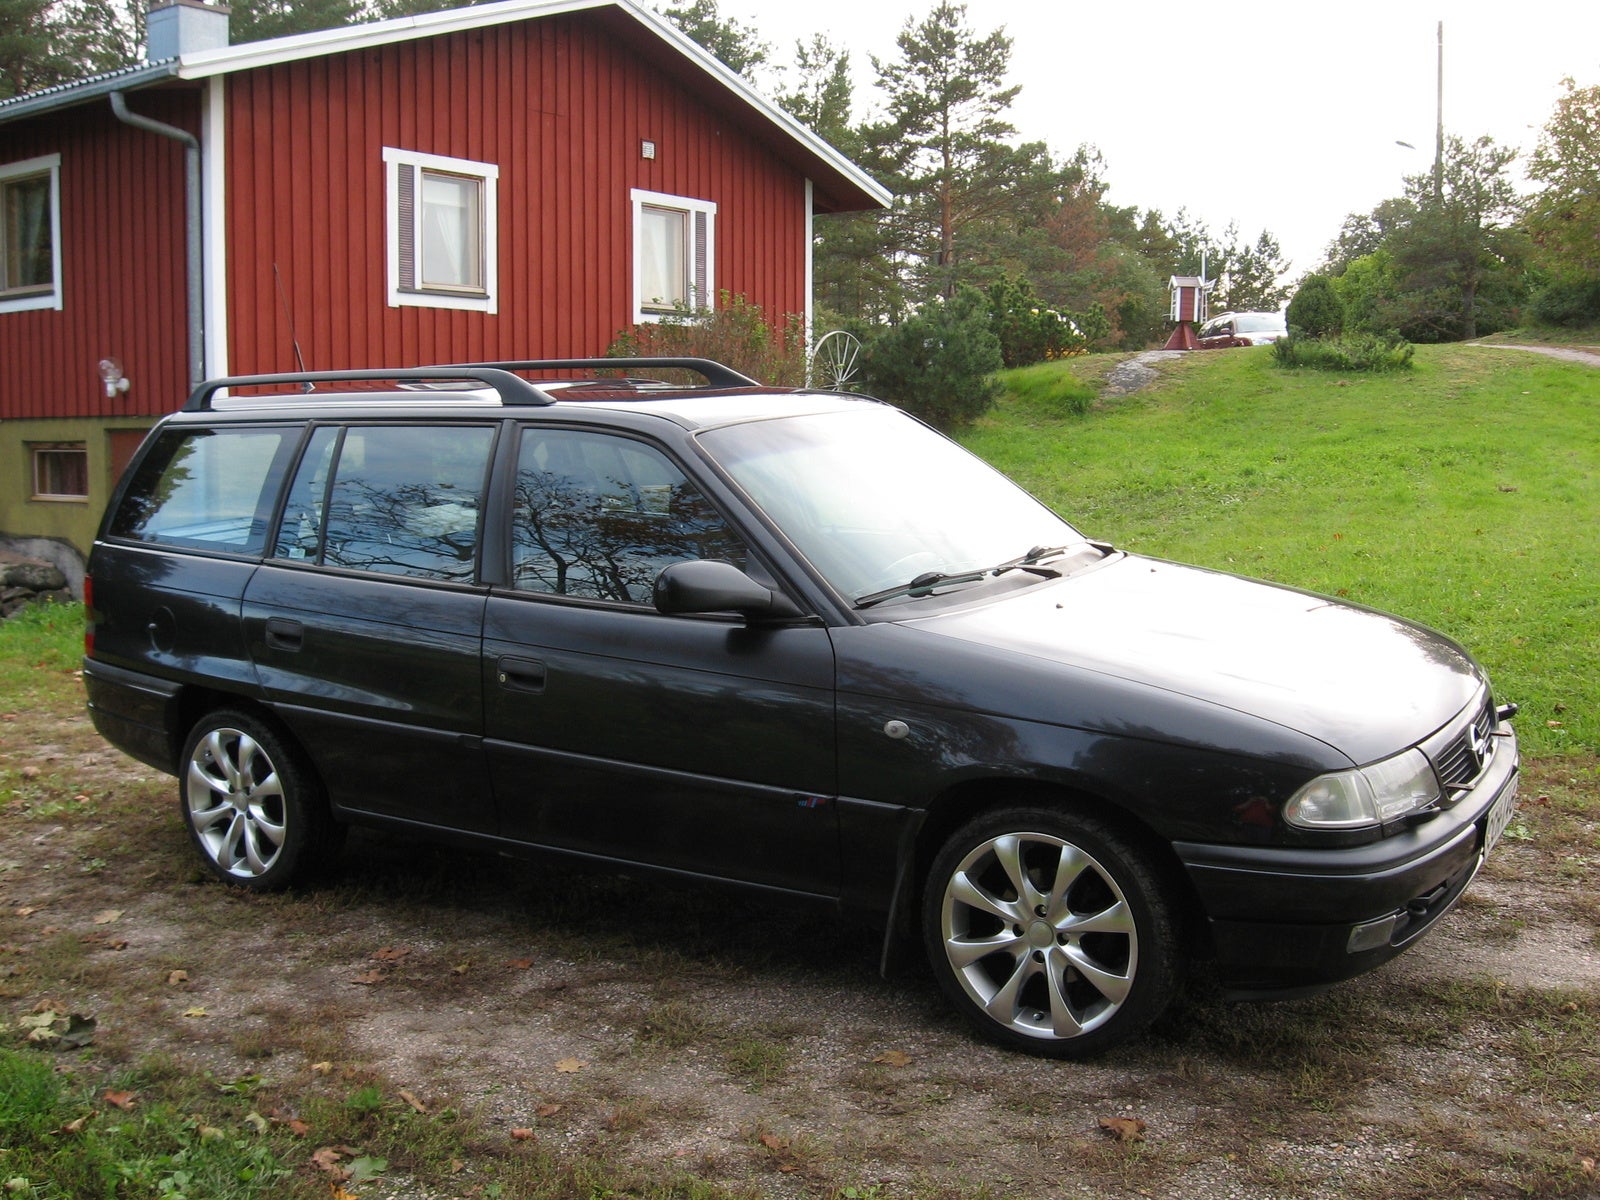 Опель универсал f. Opel Astra 1997. Opel Astra f 1997 универсал.